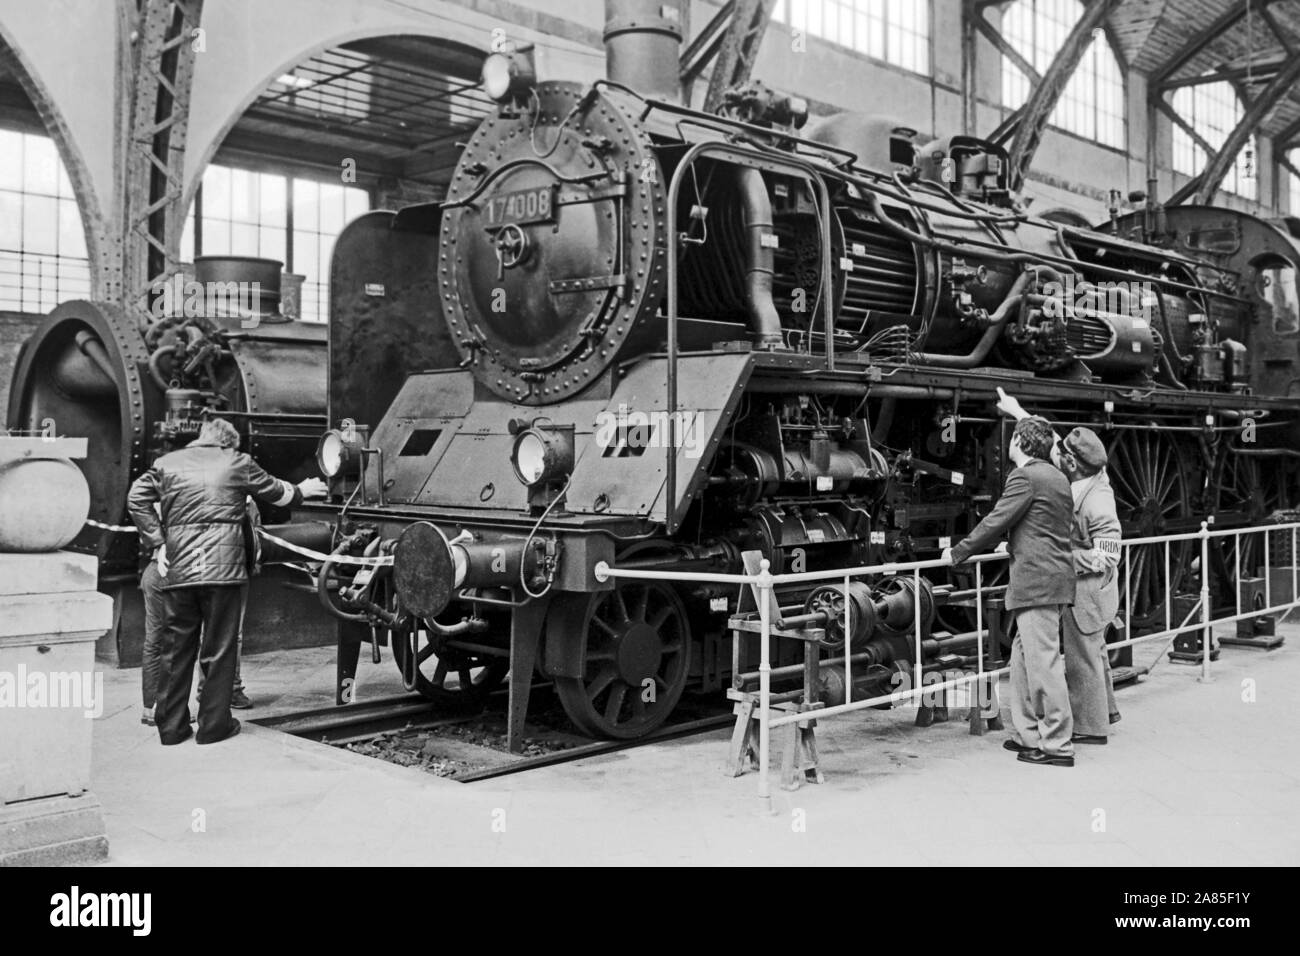 Preußische P 8 Dampflokomotive im Eisenbahnmuseum am ehemaligen Berlin Hamburger Bahnhof, Deutschland 1984. Prussian P 8 steam locomotive at the railway museum of the former Berlin Hamburg railway station, Germany 1984. Stock Photo